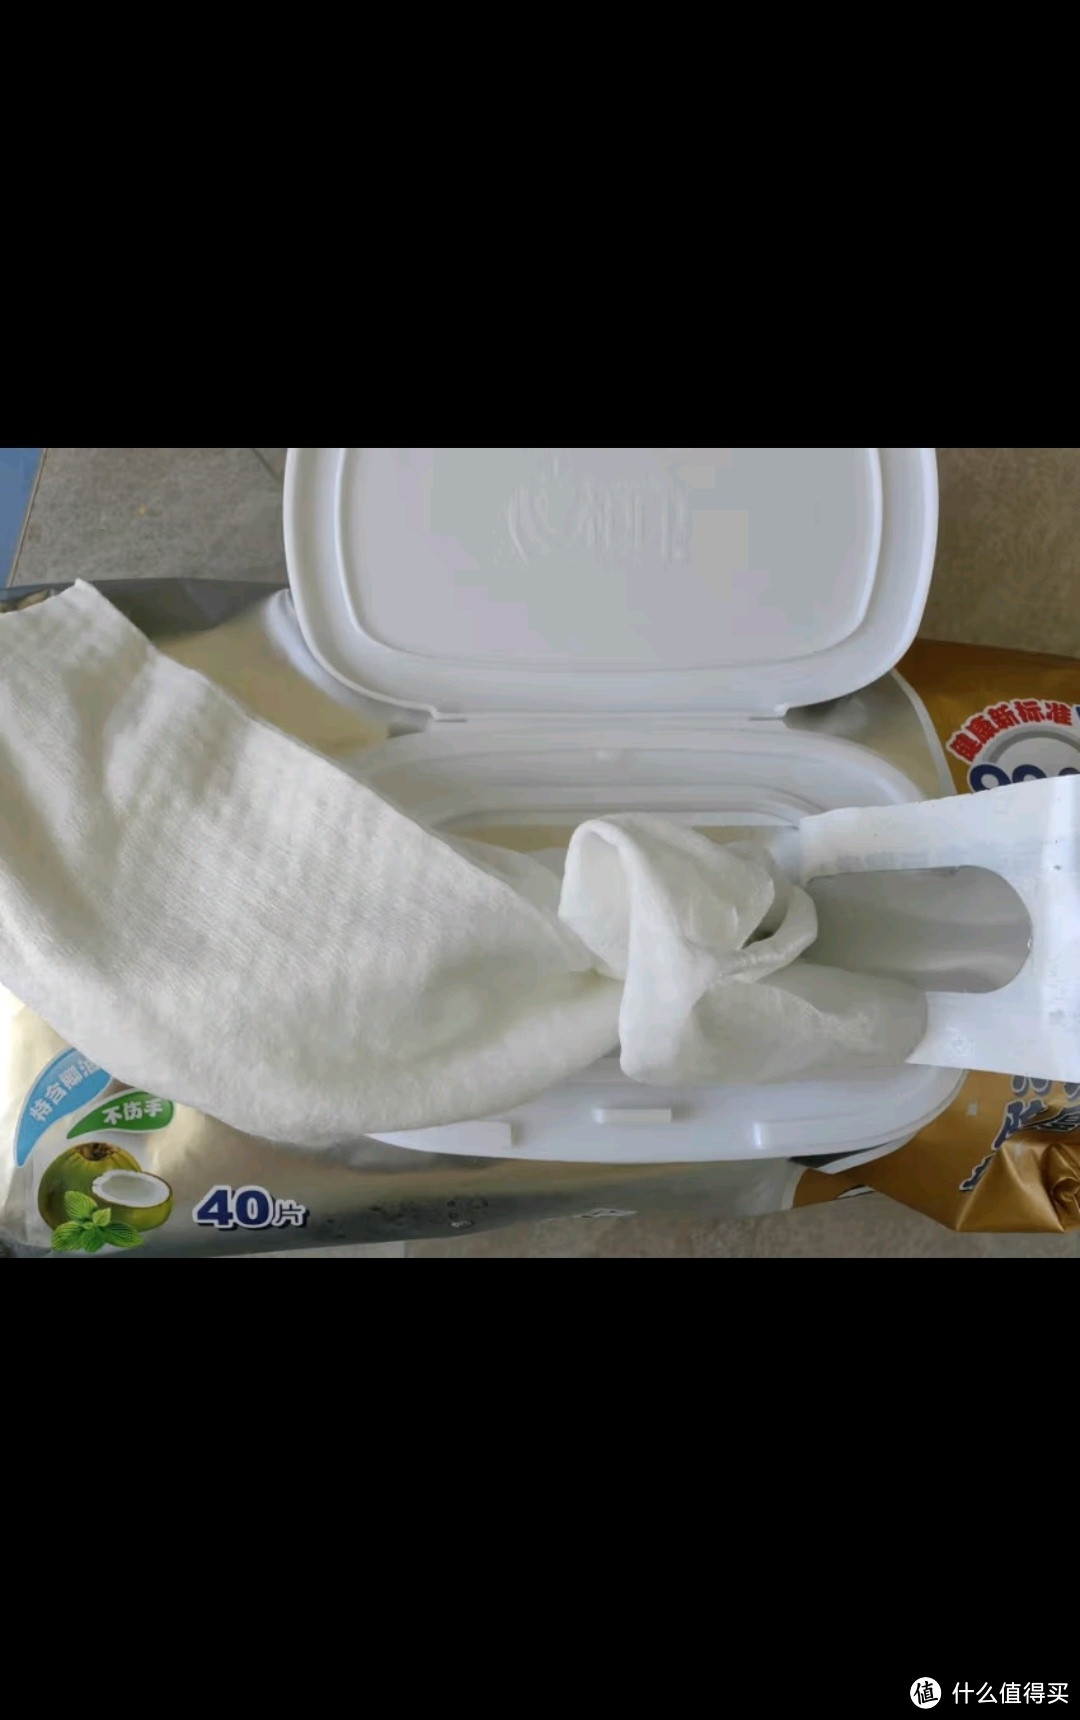 心相印厨房湿巾 40抽*3包 金装去污去油厨房专用湿纸巾 新老包装随机发